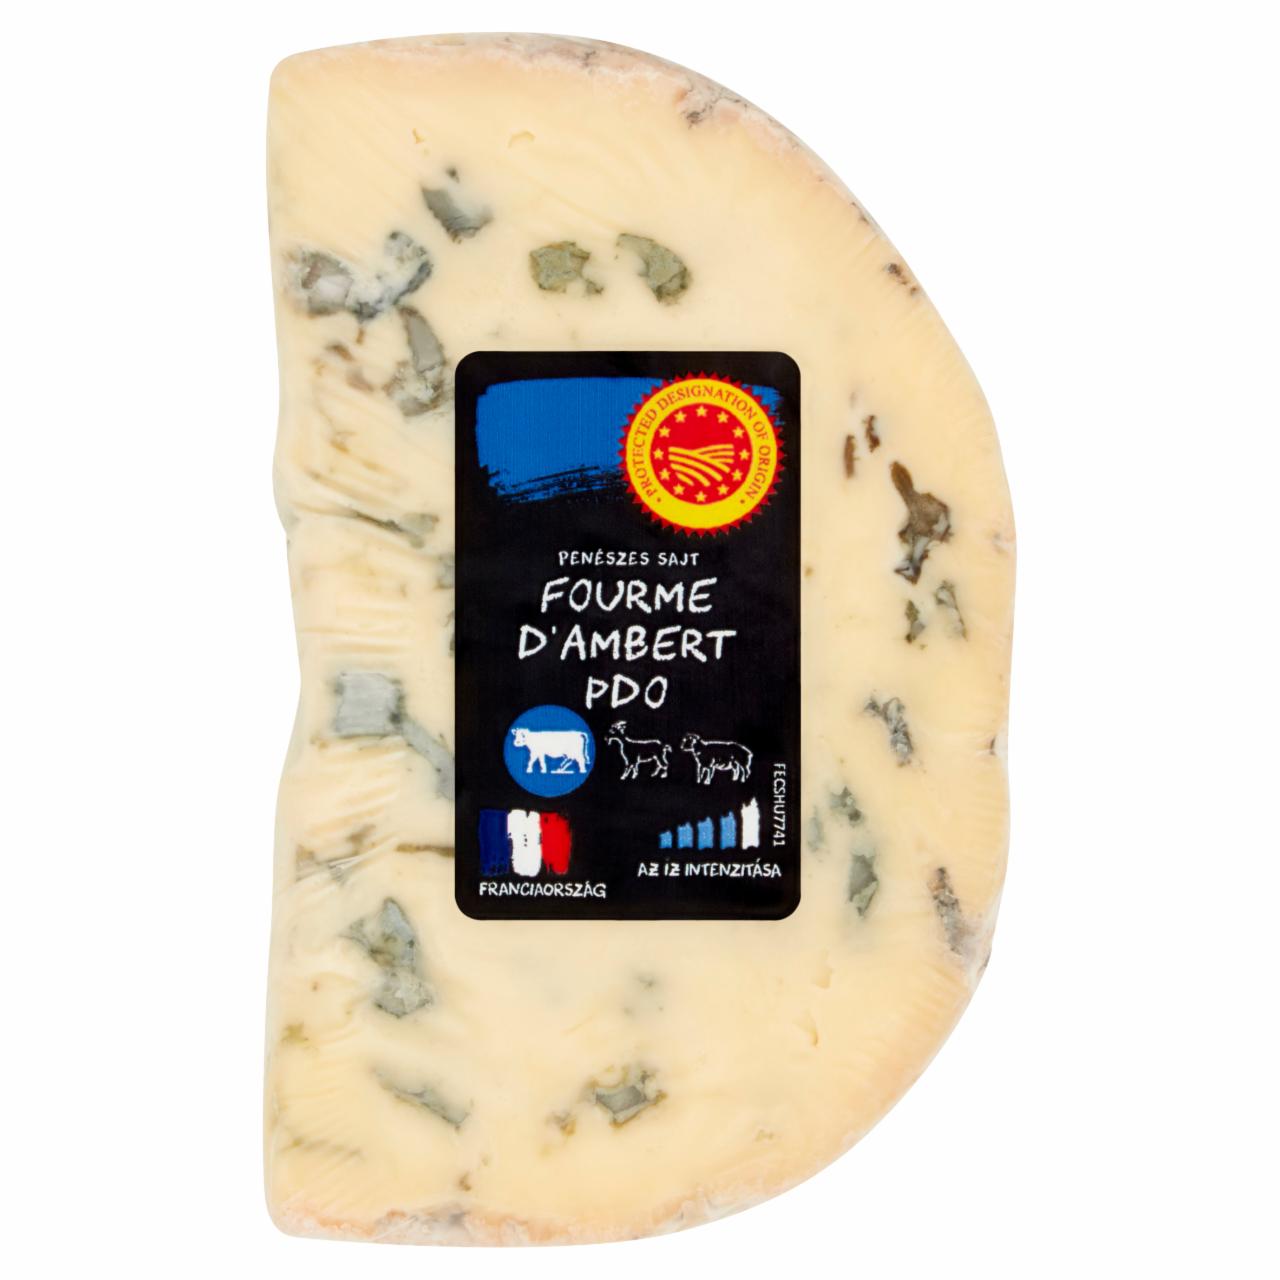 Képek - Fourme D'Ambert penészes sajt